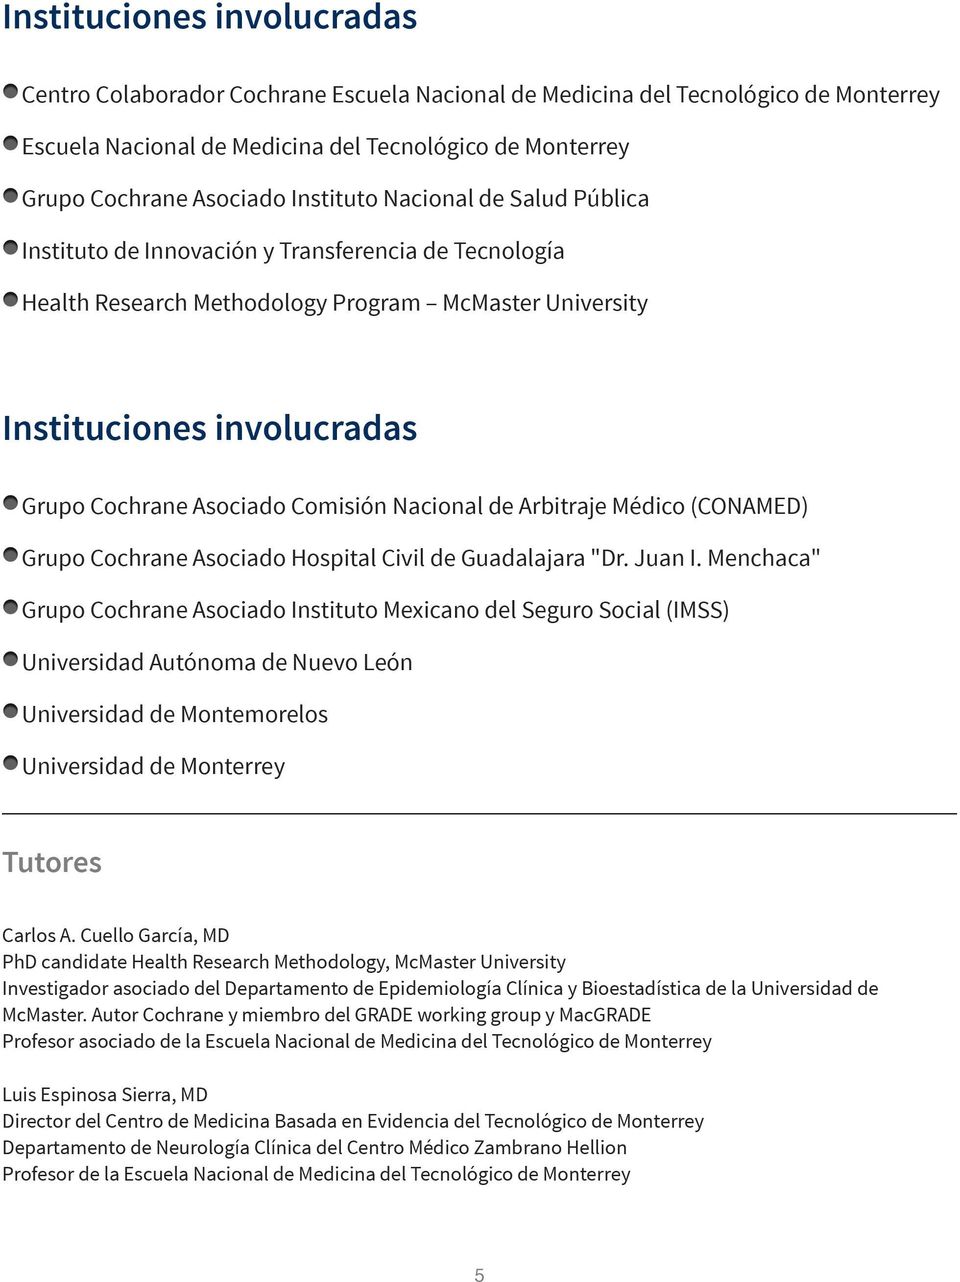 Menchaca" Grupo Cochrane Asociado Instituto Mexicano del Seguro Social (IMSS) Universidad Autónoma de Nuevo León Universidad de Montemorelos Universidad de Monterrey Tutores A.